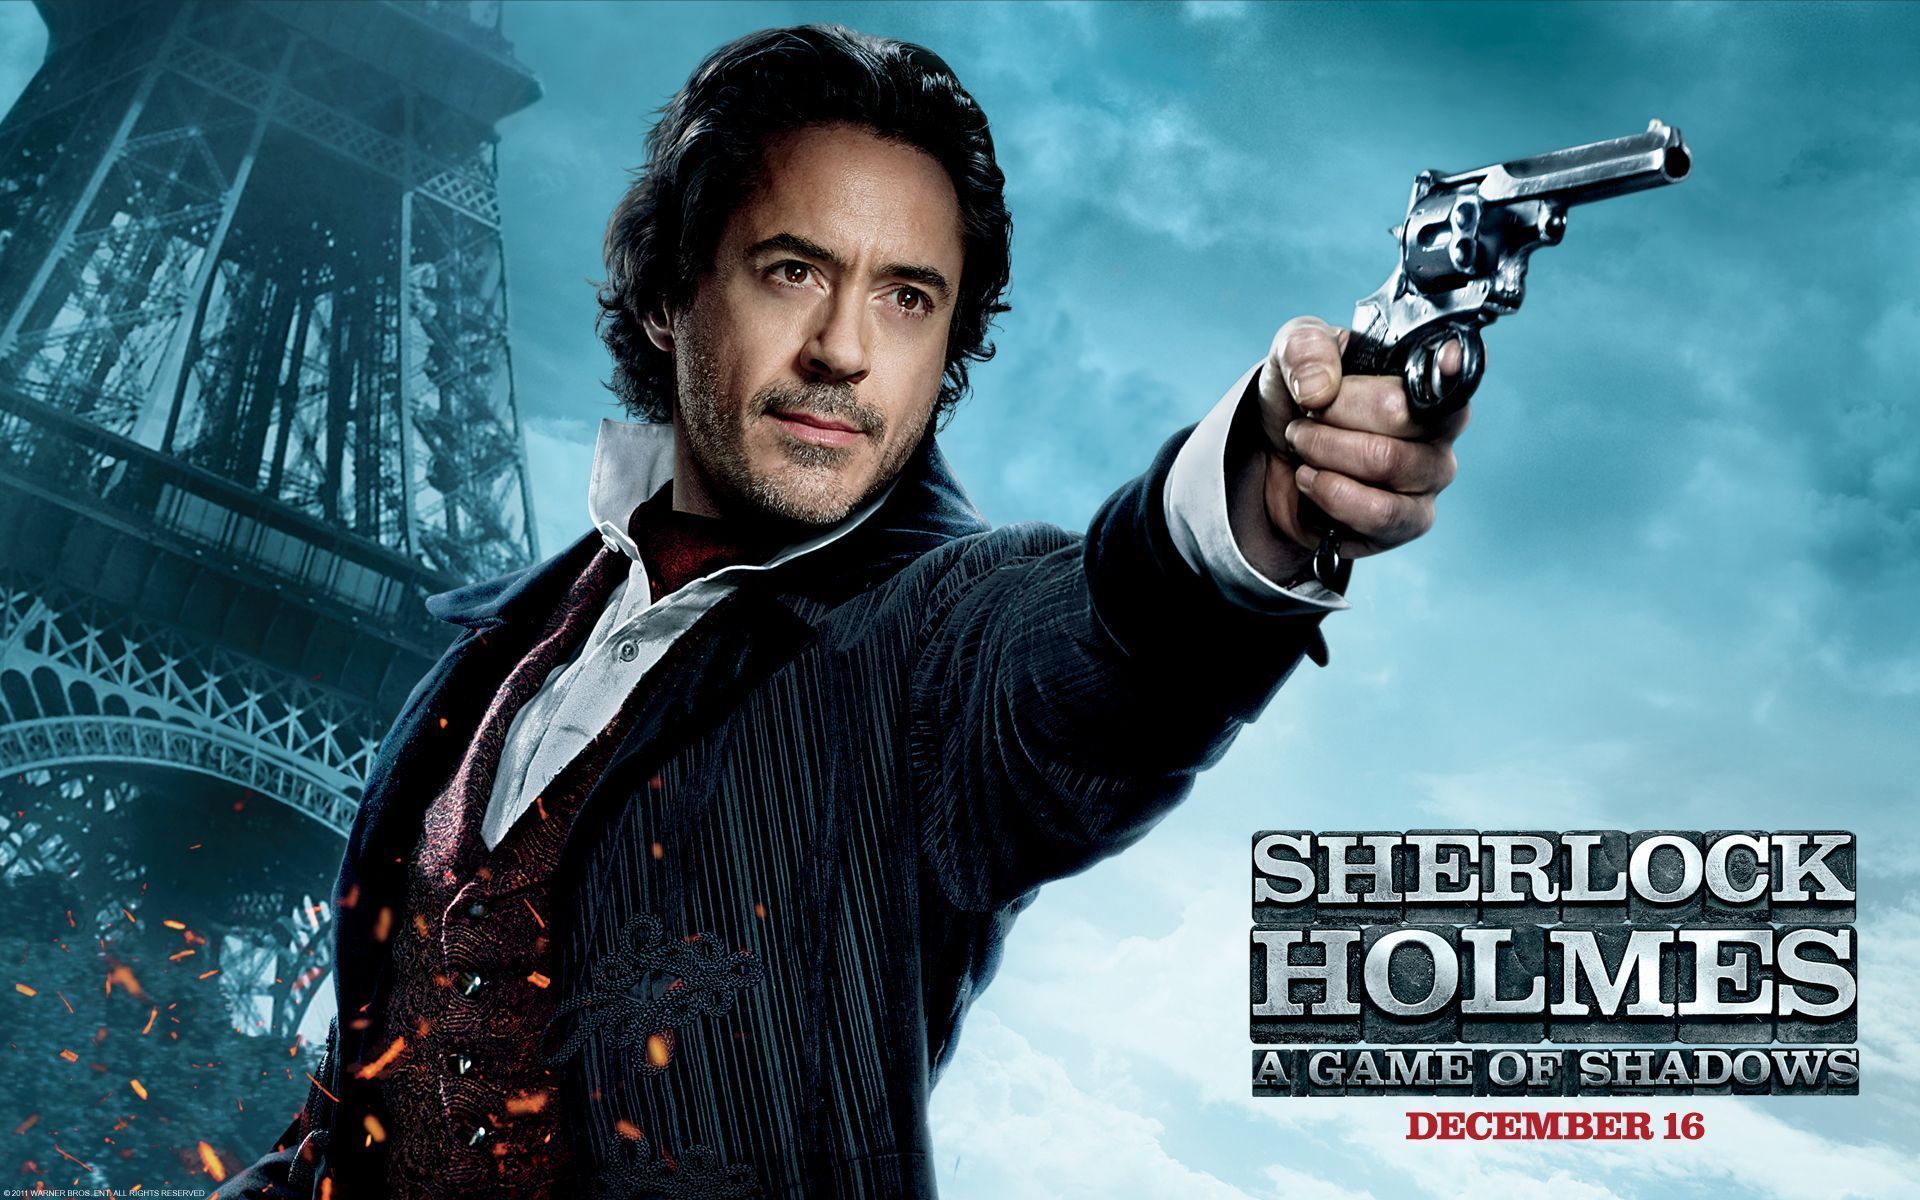 Robert Downey Jr in Sherlock Holmes 2 Wallpapers | HD Wallpapers